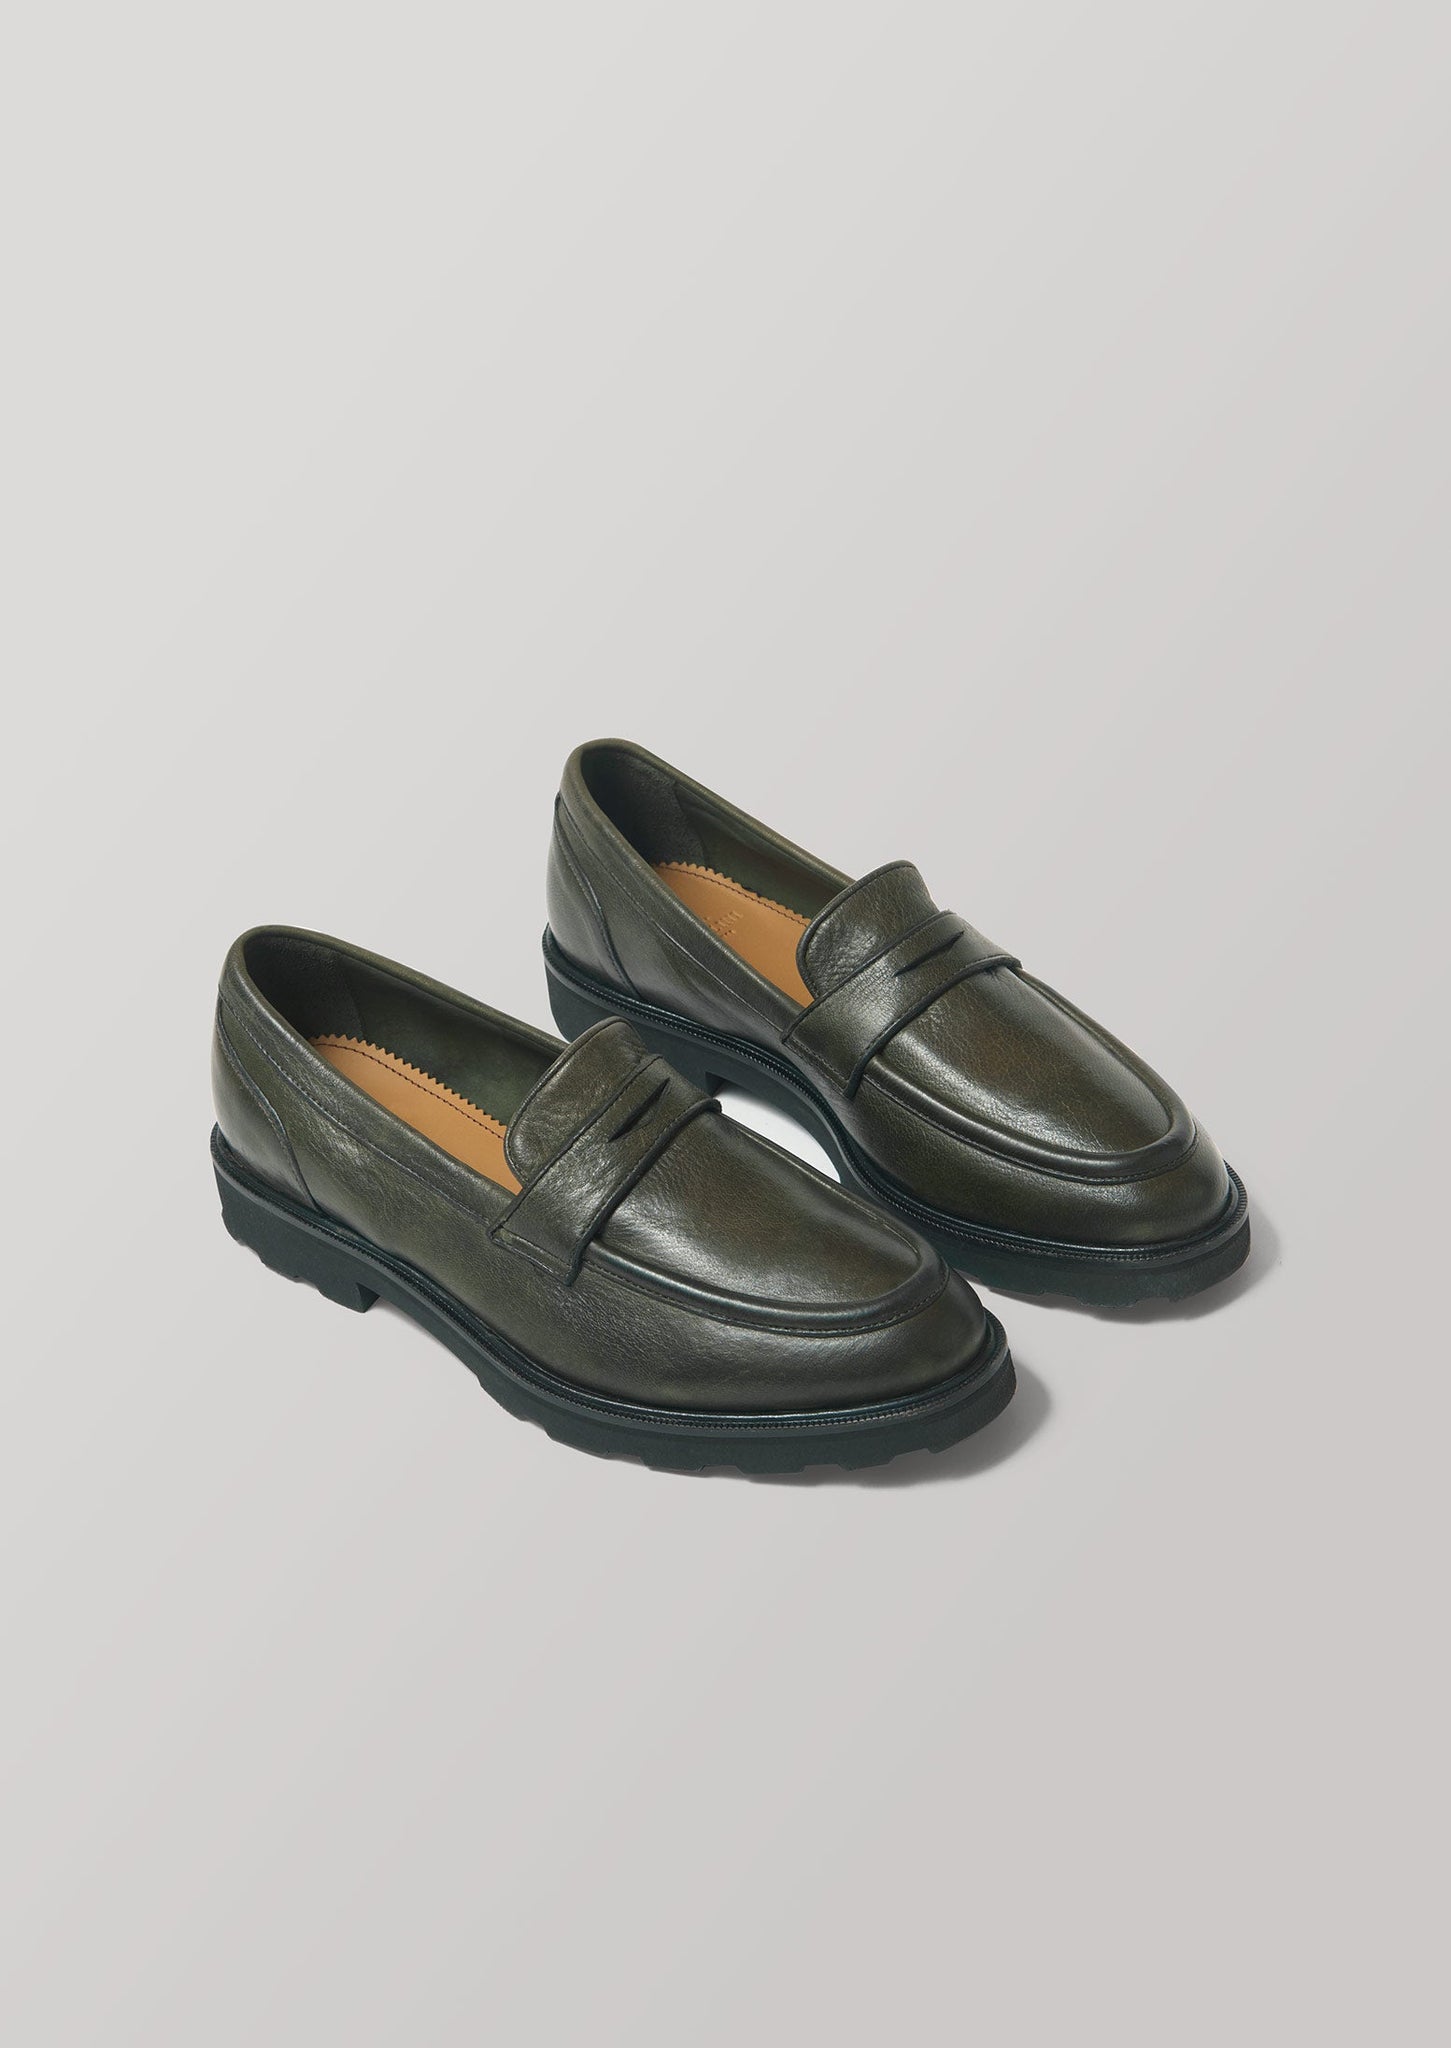 Sturlini Loafers | Olive